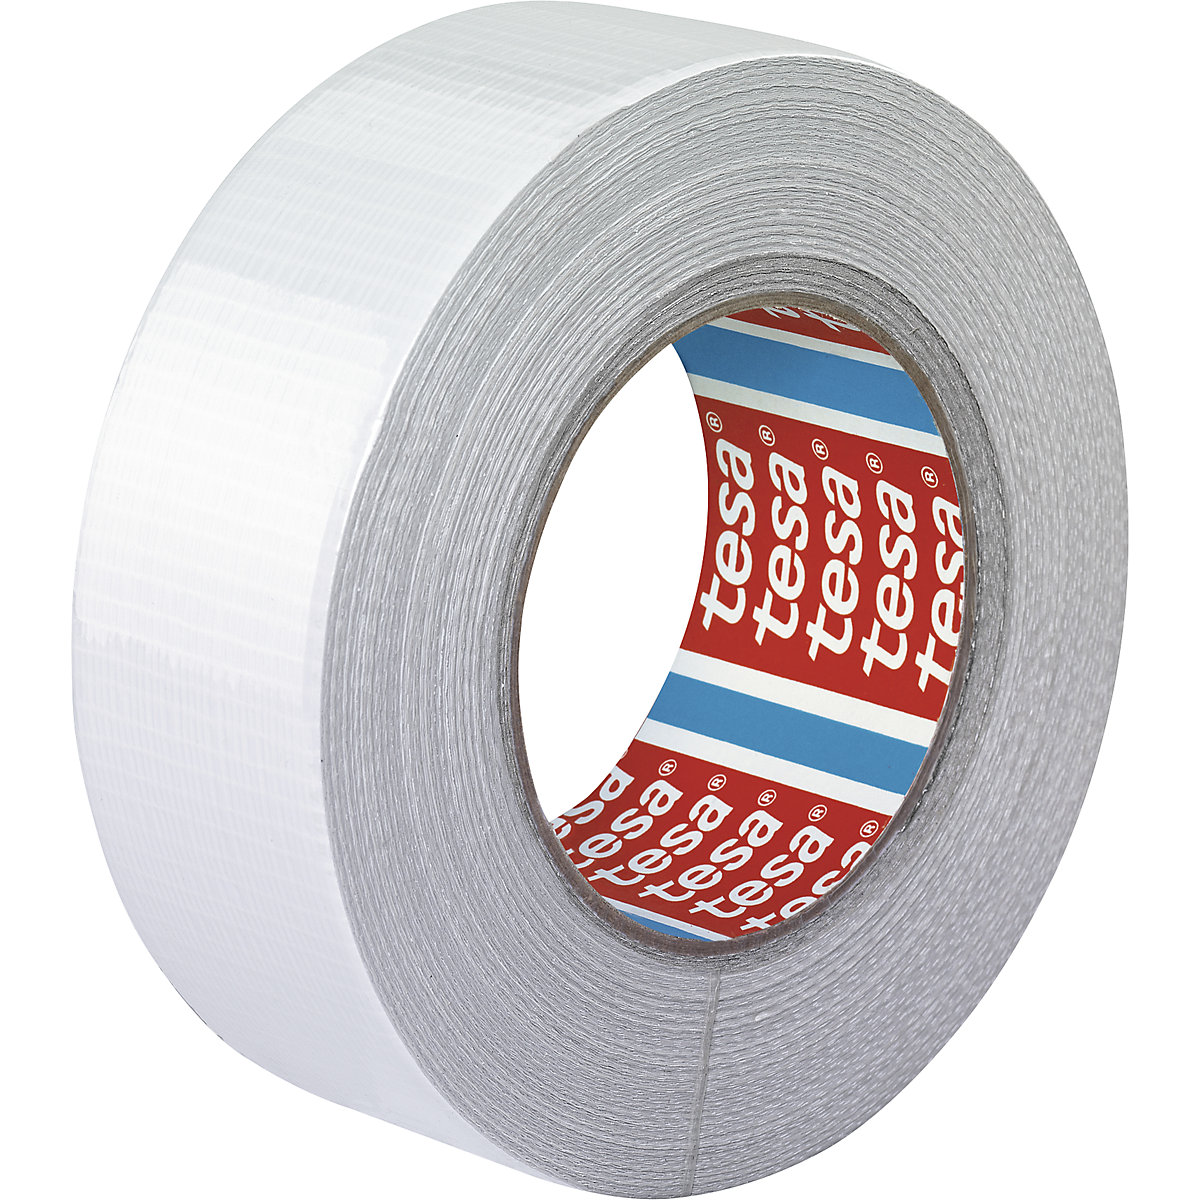 Traka od tkanine – tesa, platnena traka tesa® 4662, pak. 24 role, u bijeloj boji, širina trake 48 mm-7